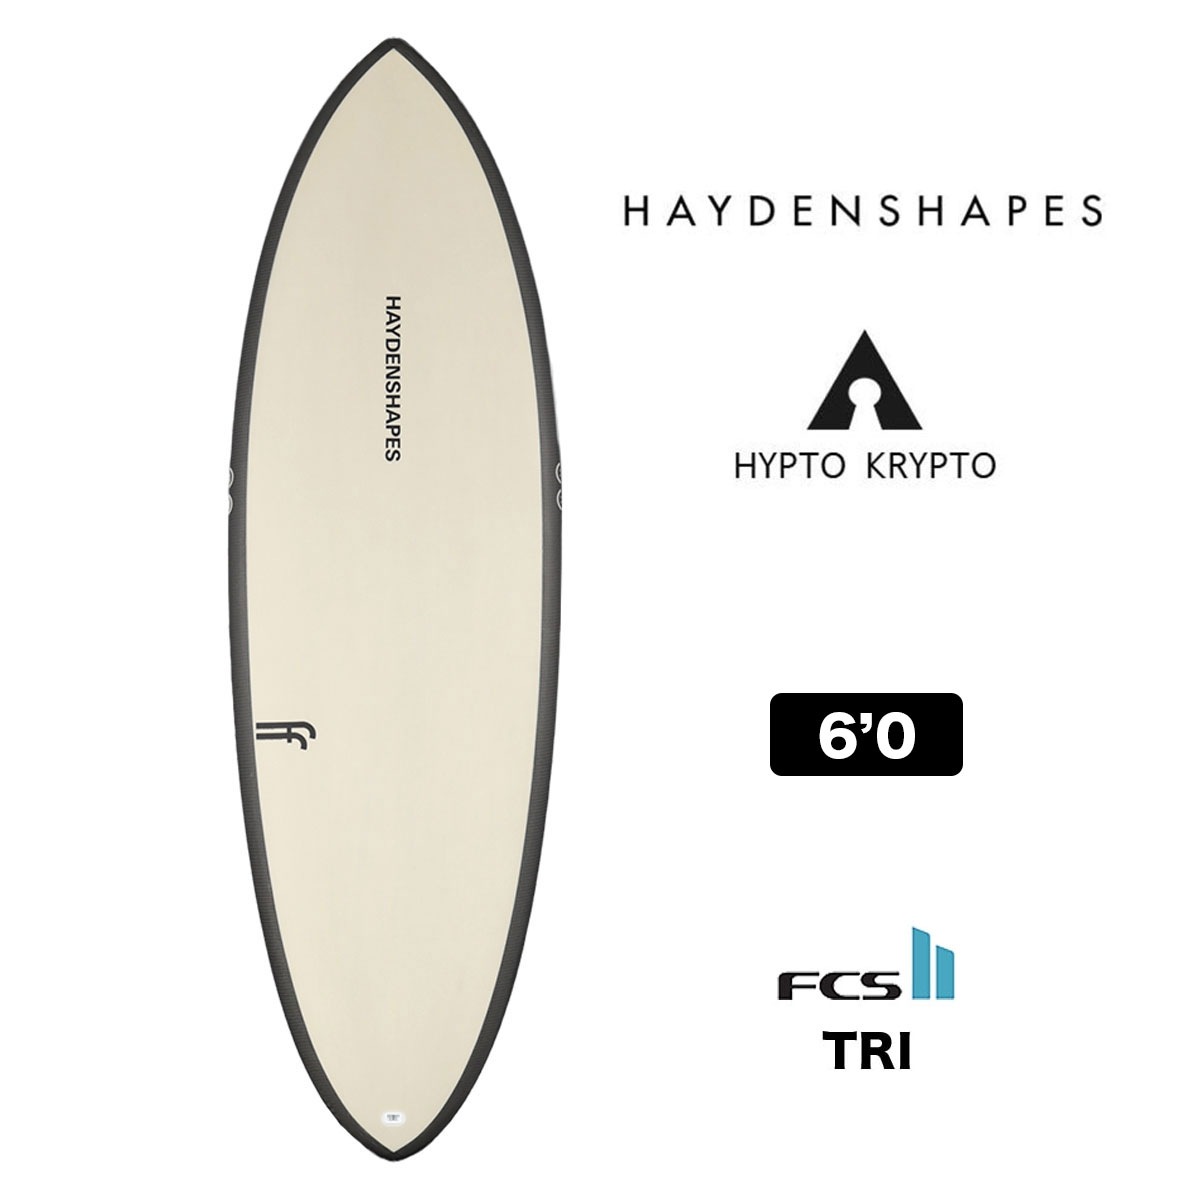 HAYDENSHAPES HYPTO KRYPTO 6.0 ヘイデン シェイプス ヒプトクリプト 6'0 sand FCS2 TRI ショートボード  サーフボード サーフィン サンド ベージュ-ジャックオーシャンスポーツ